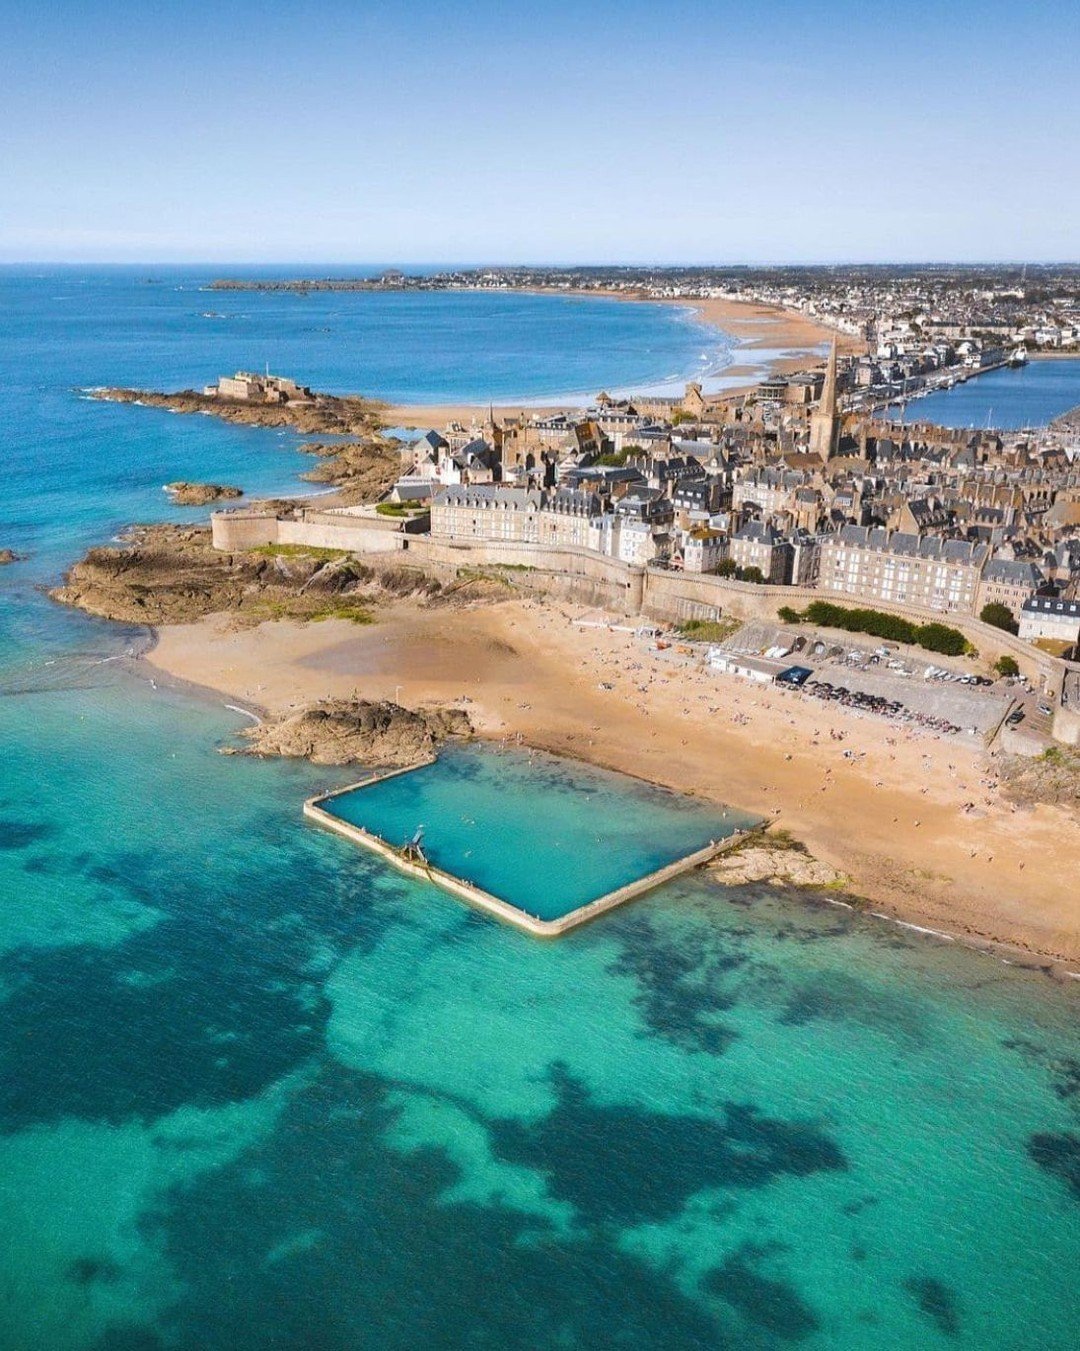 ⚓️ La piscine d’eau de mer de la plage de Bon-Secours à Saint-Malo. Elle est aujourd’hui très prisée pour sa vue imprenable sur la baie du Mont Saint-Michel.

➡️ Et si vous en profitiez pour découvrir nos adres